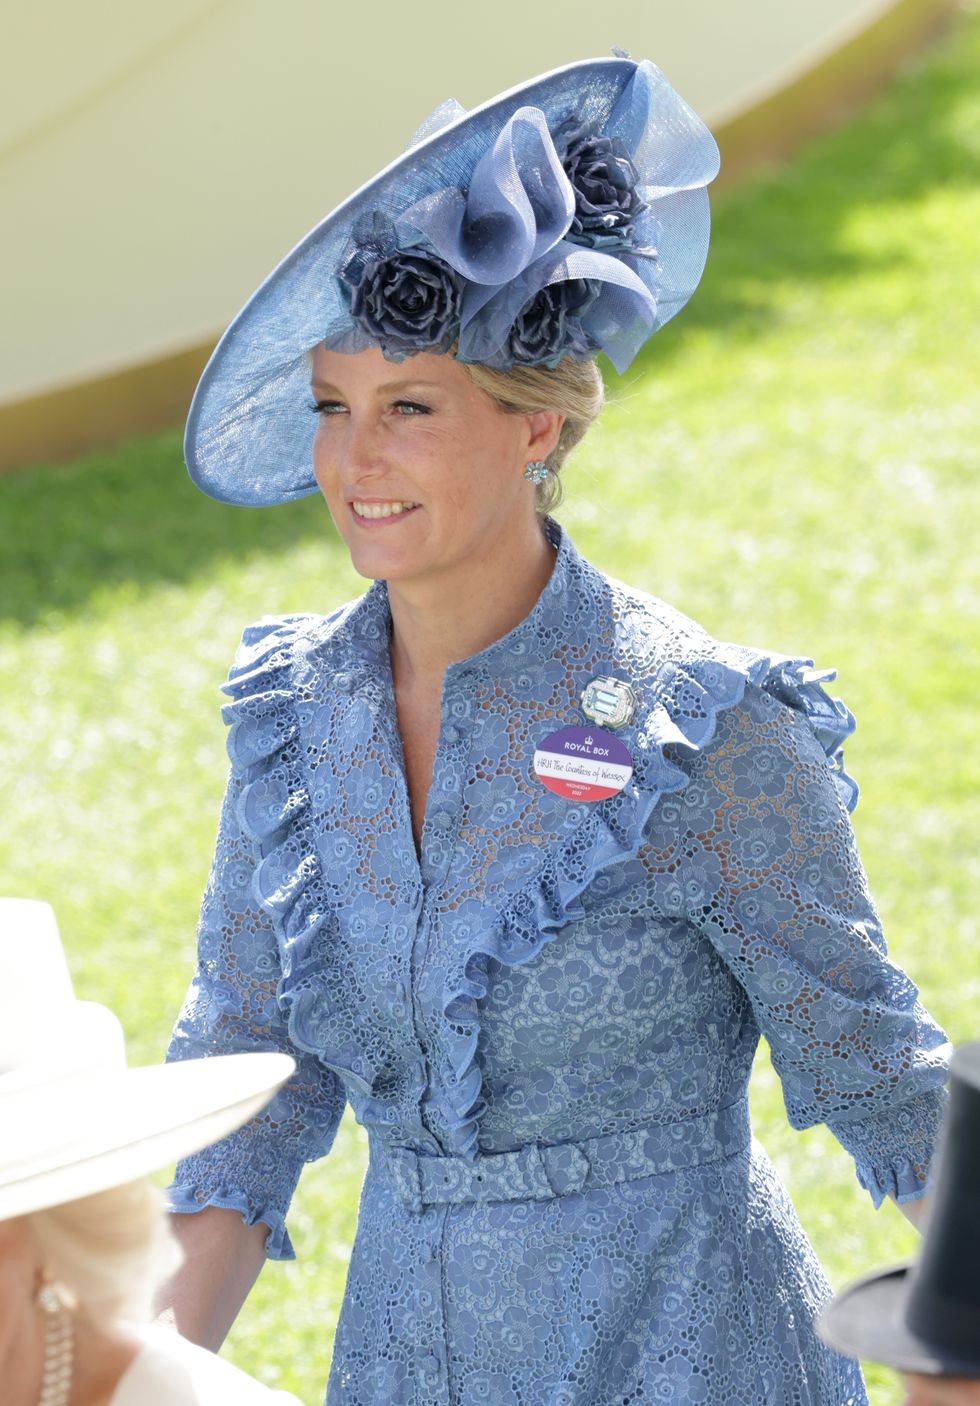 Hoàng gia Anh: Gu thời trang sành điệu của vợ hoàng tử Edward